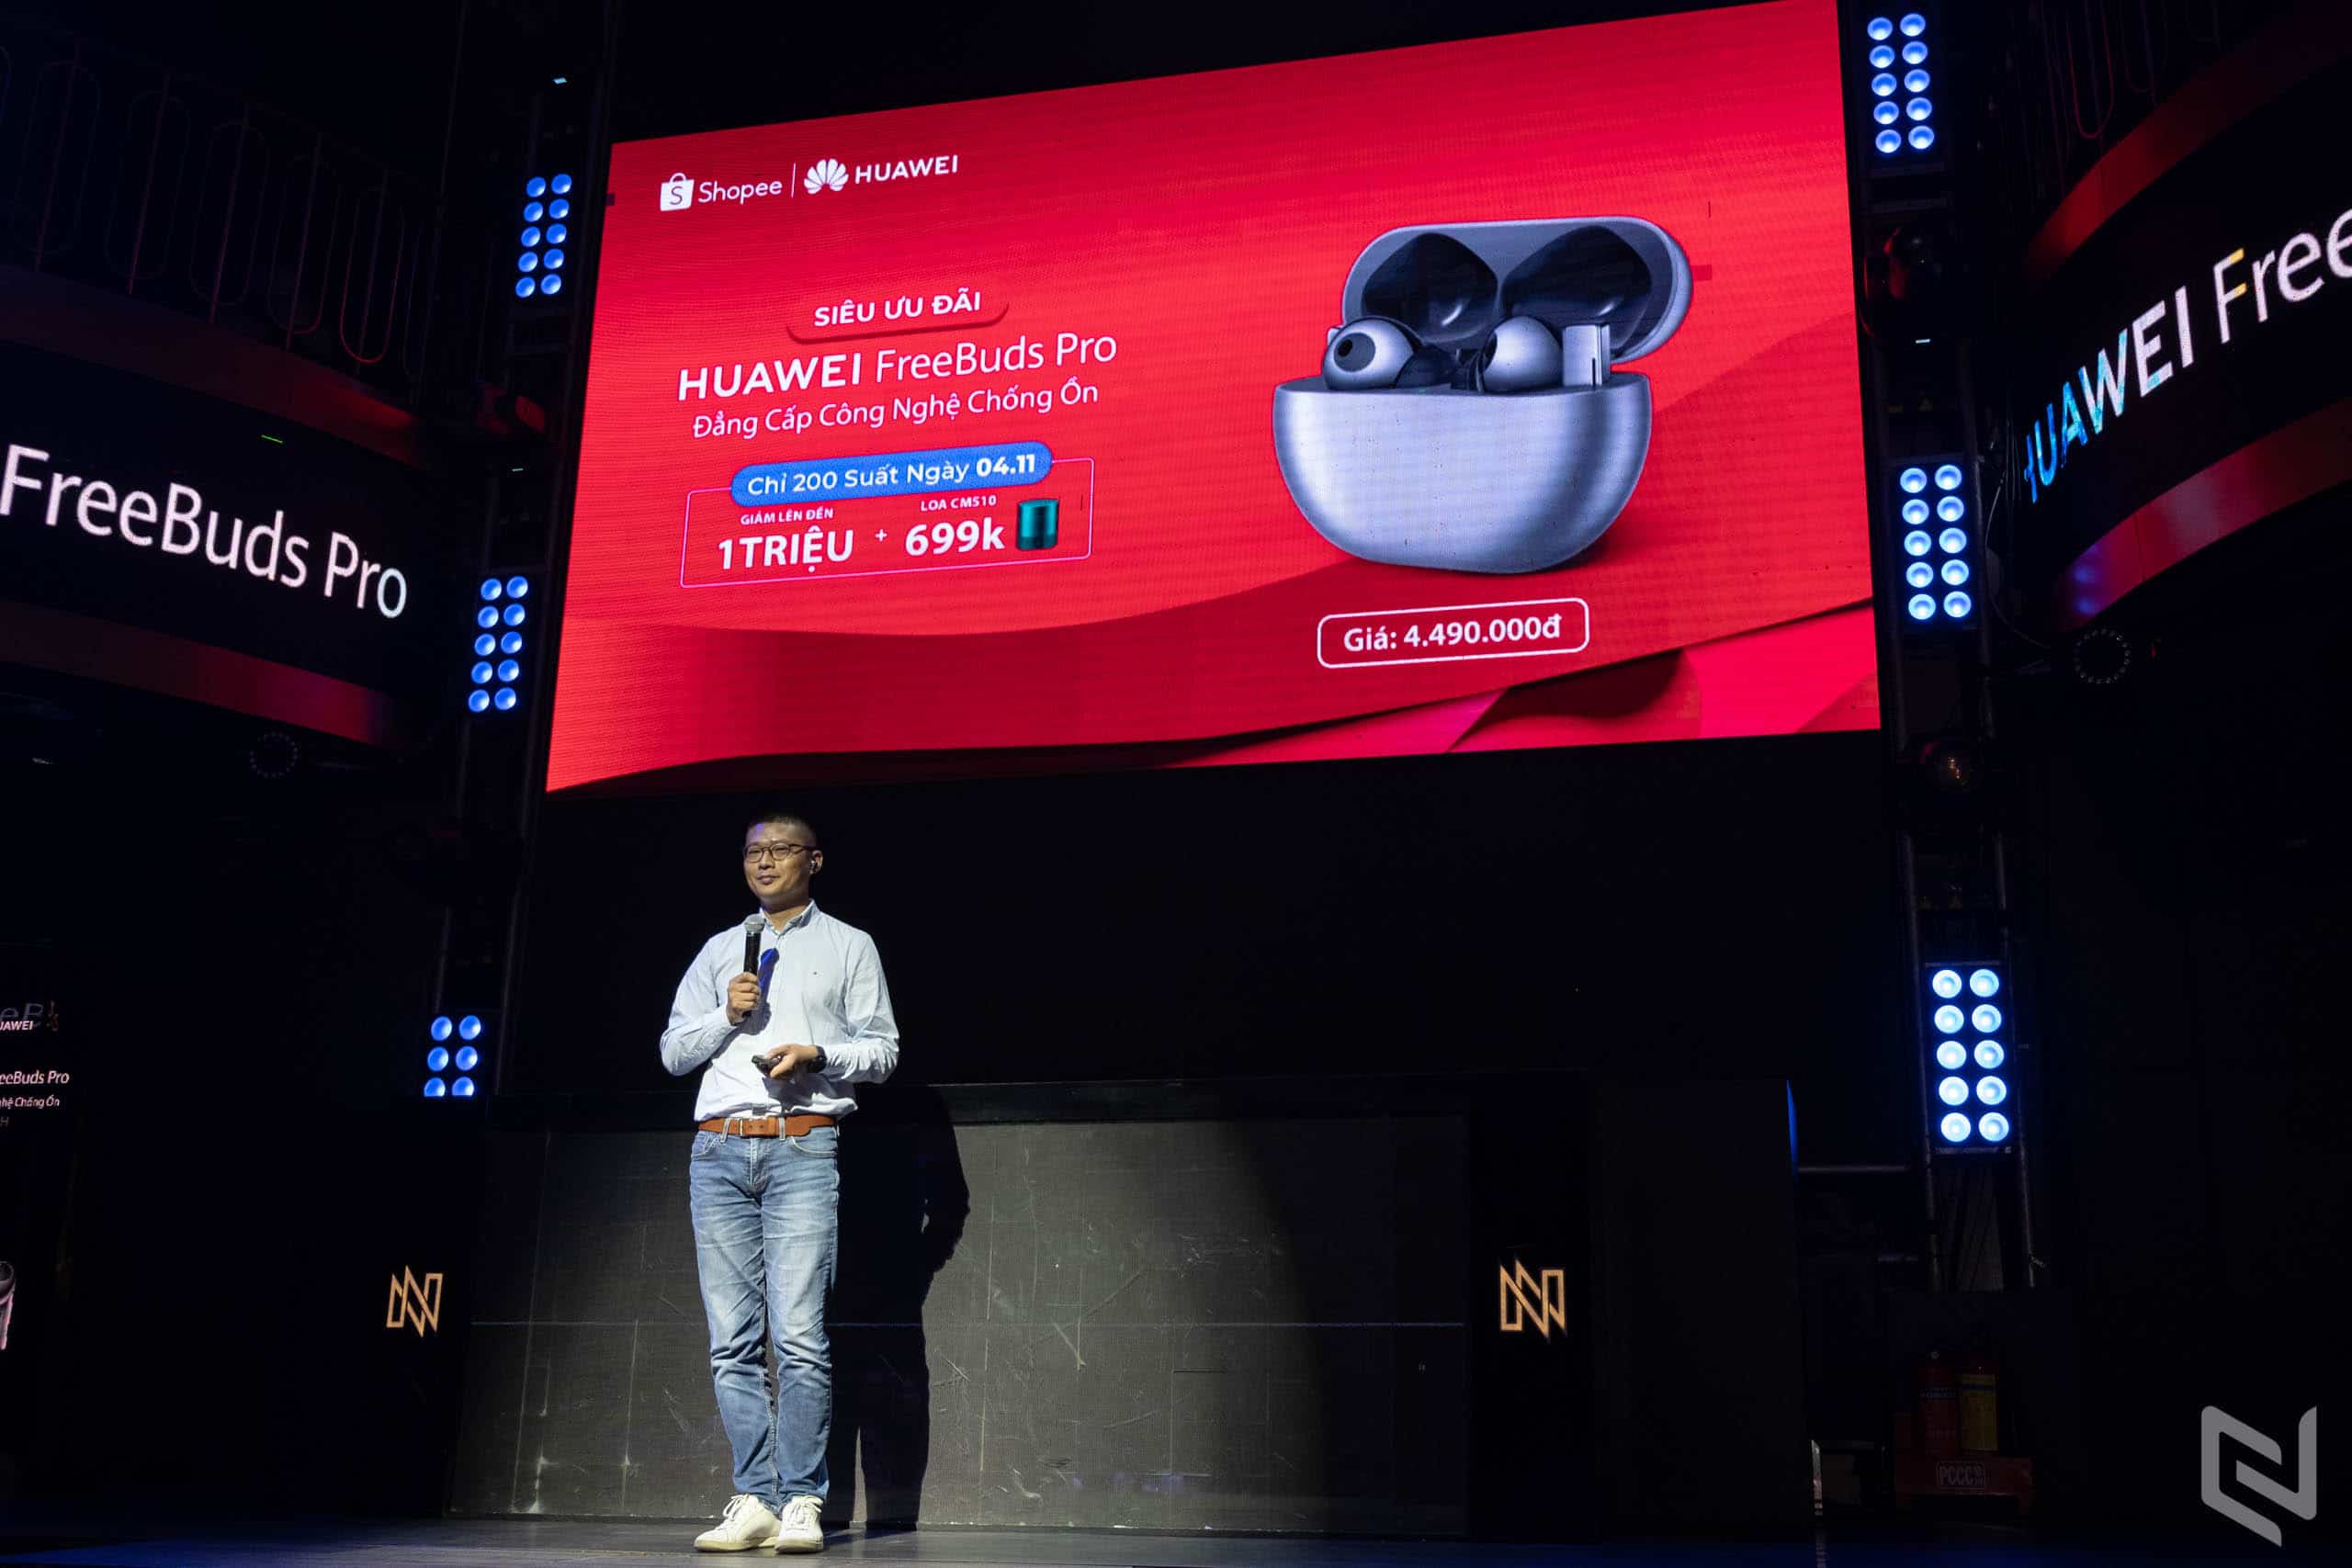 Ra mắt tai nghe không dây chống ồn thông minh Huawei FreeBuds Pro tại Việt Nam